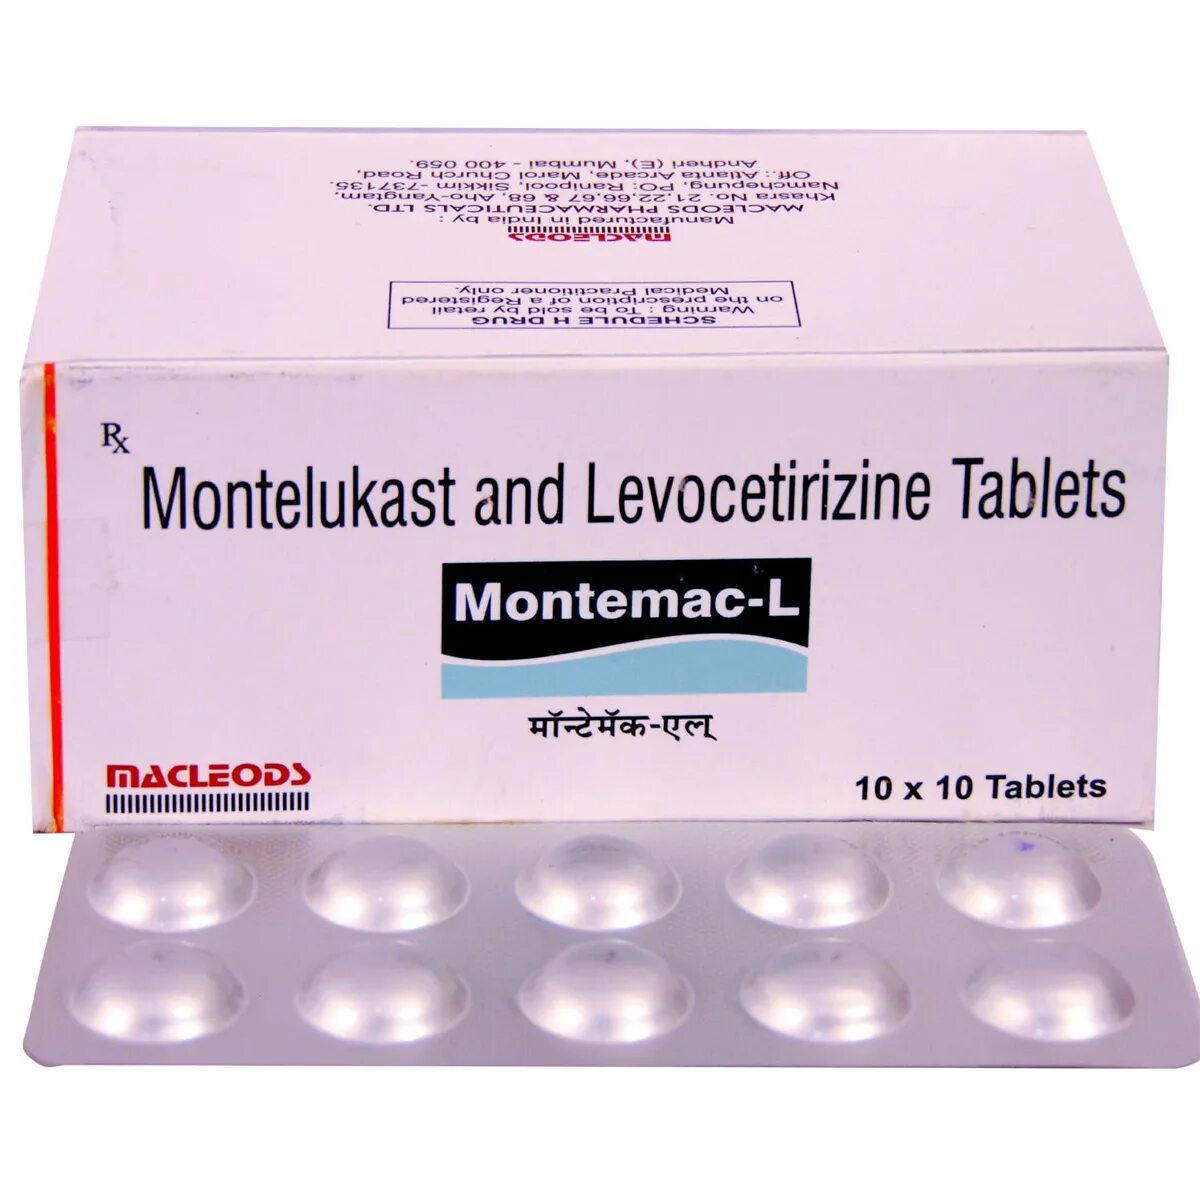 Монтелукаст левоцетиризин. Левоцетиризин монтелукаст таблетки. Монтелукаст и левоцетиризин в одной таблетке. Монтас л таблетки.